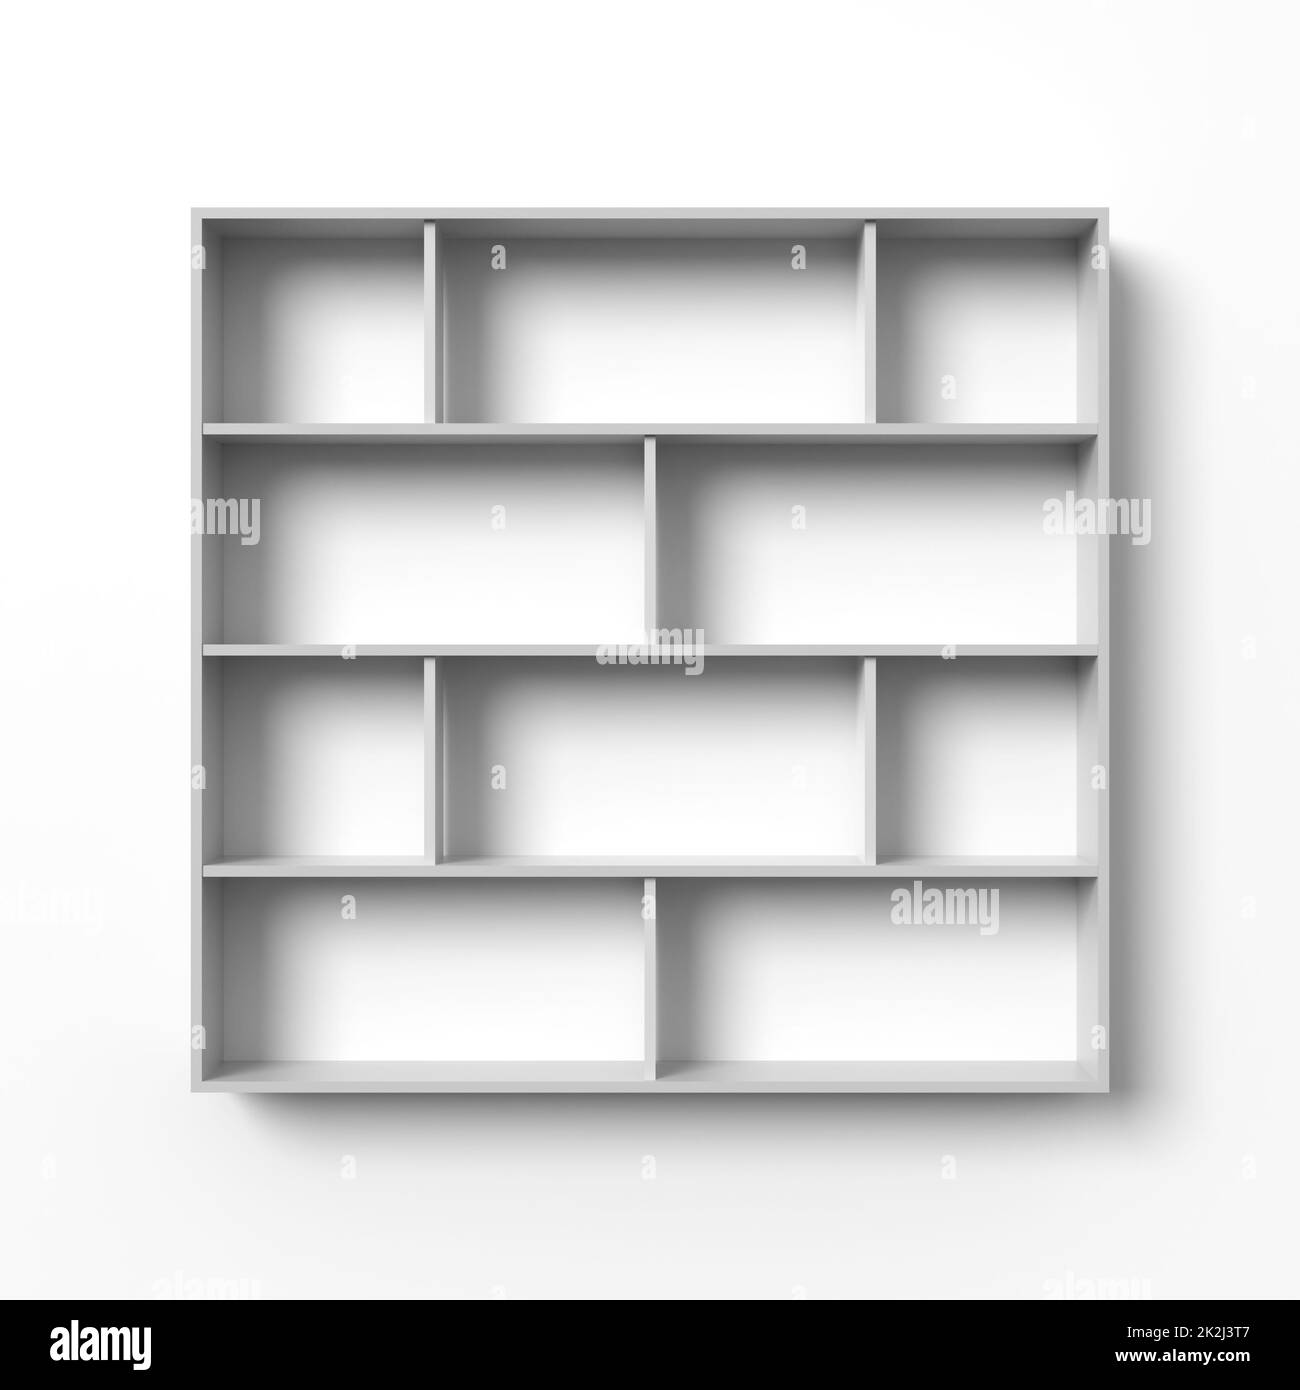 Blank shelves Stock Photo